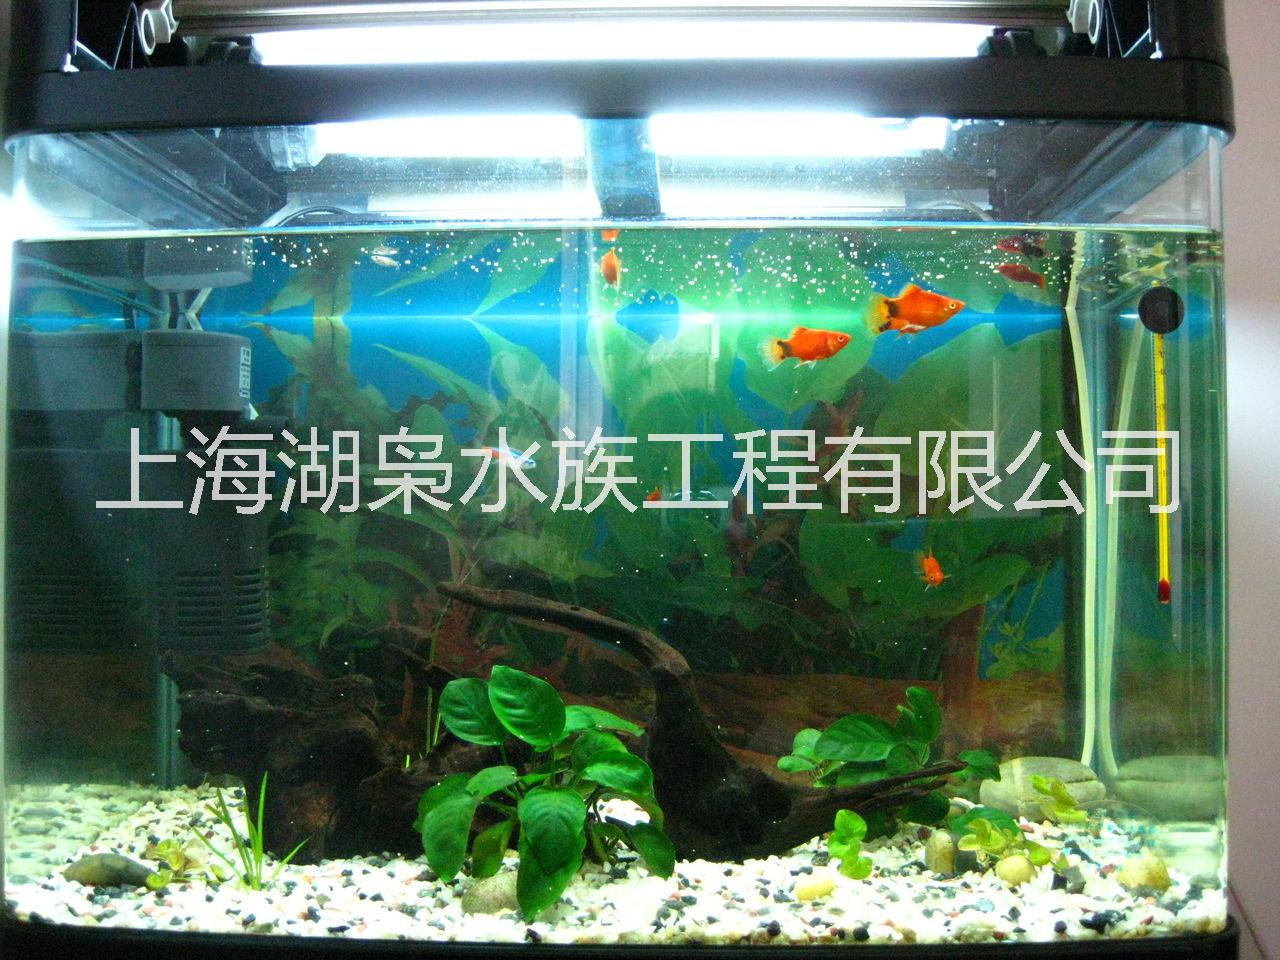 饲养热带鱼鱼缸 热带鱼观赏鱼缸厂家  饲养热带鱼生态鱼缸